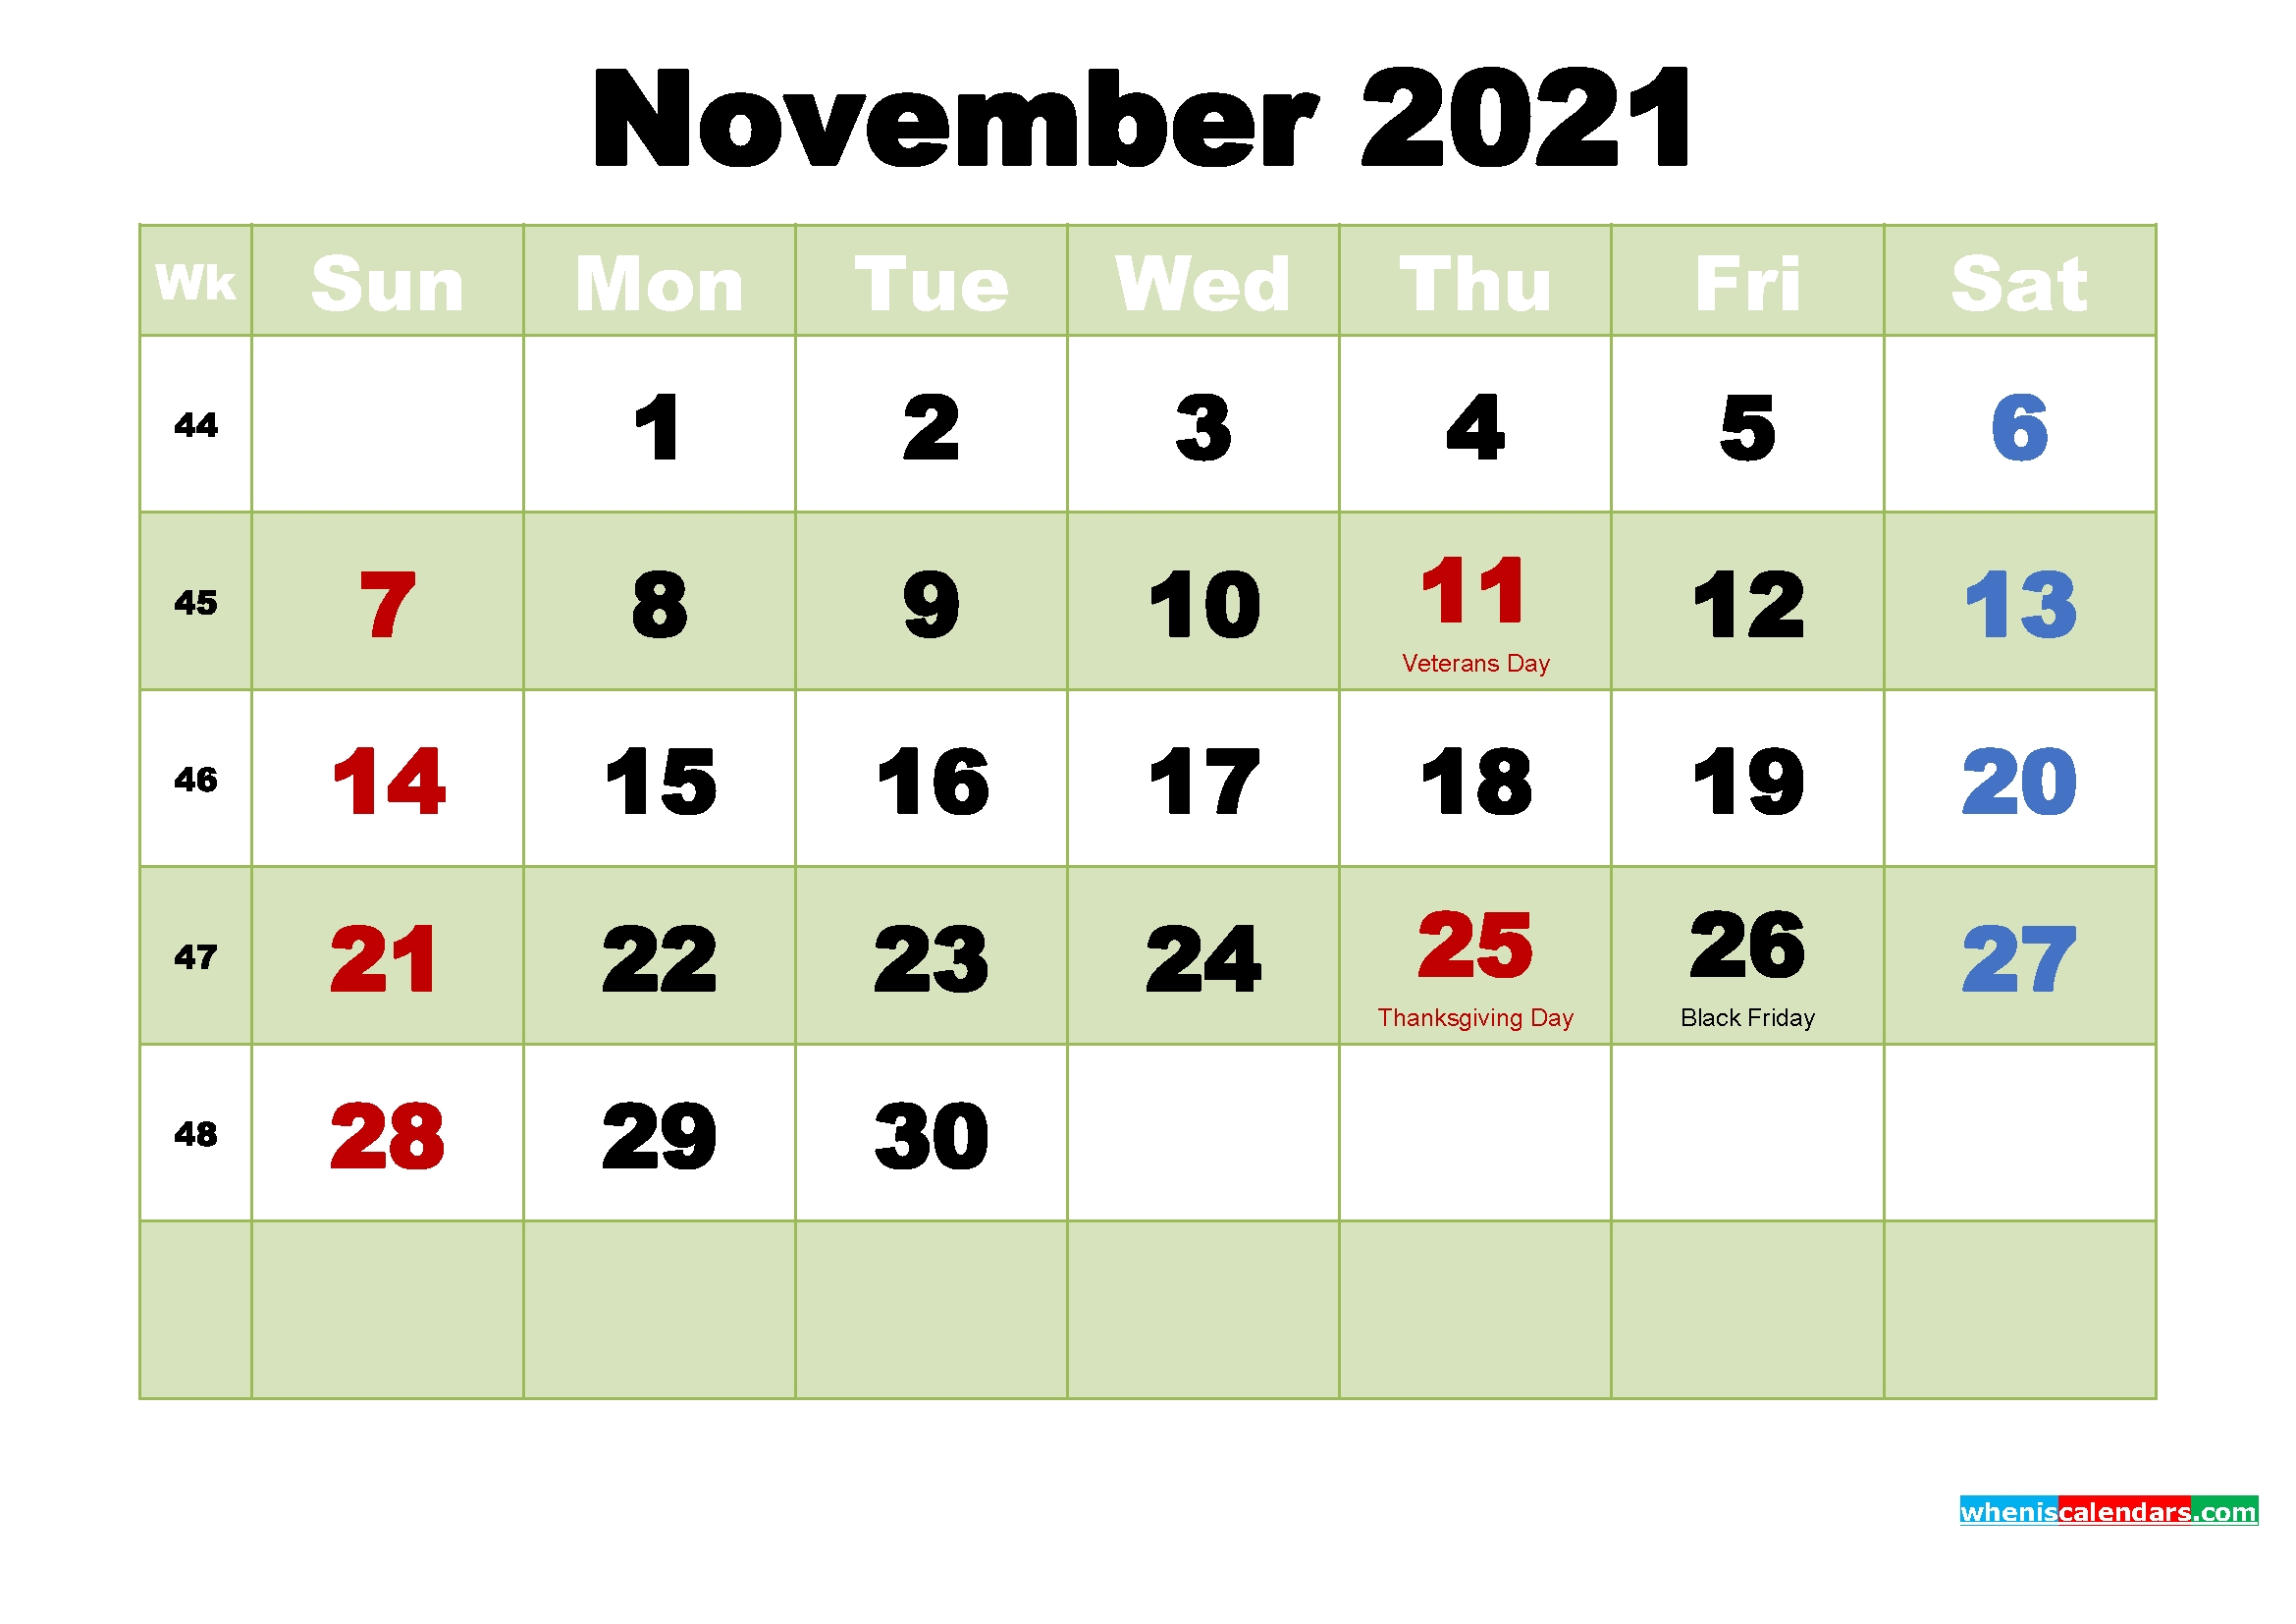 November 2021 Wallpaper Calendar | Lunar Calendar Calendar For November 2021 With Holidays